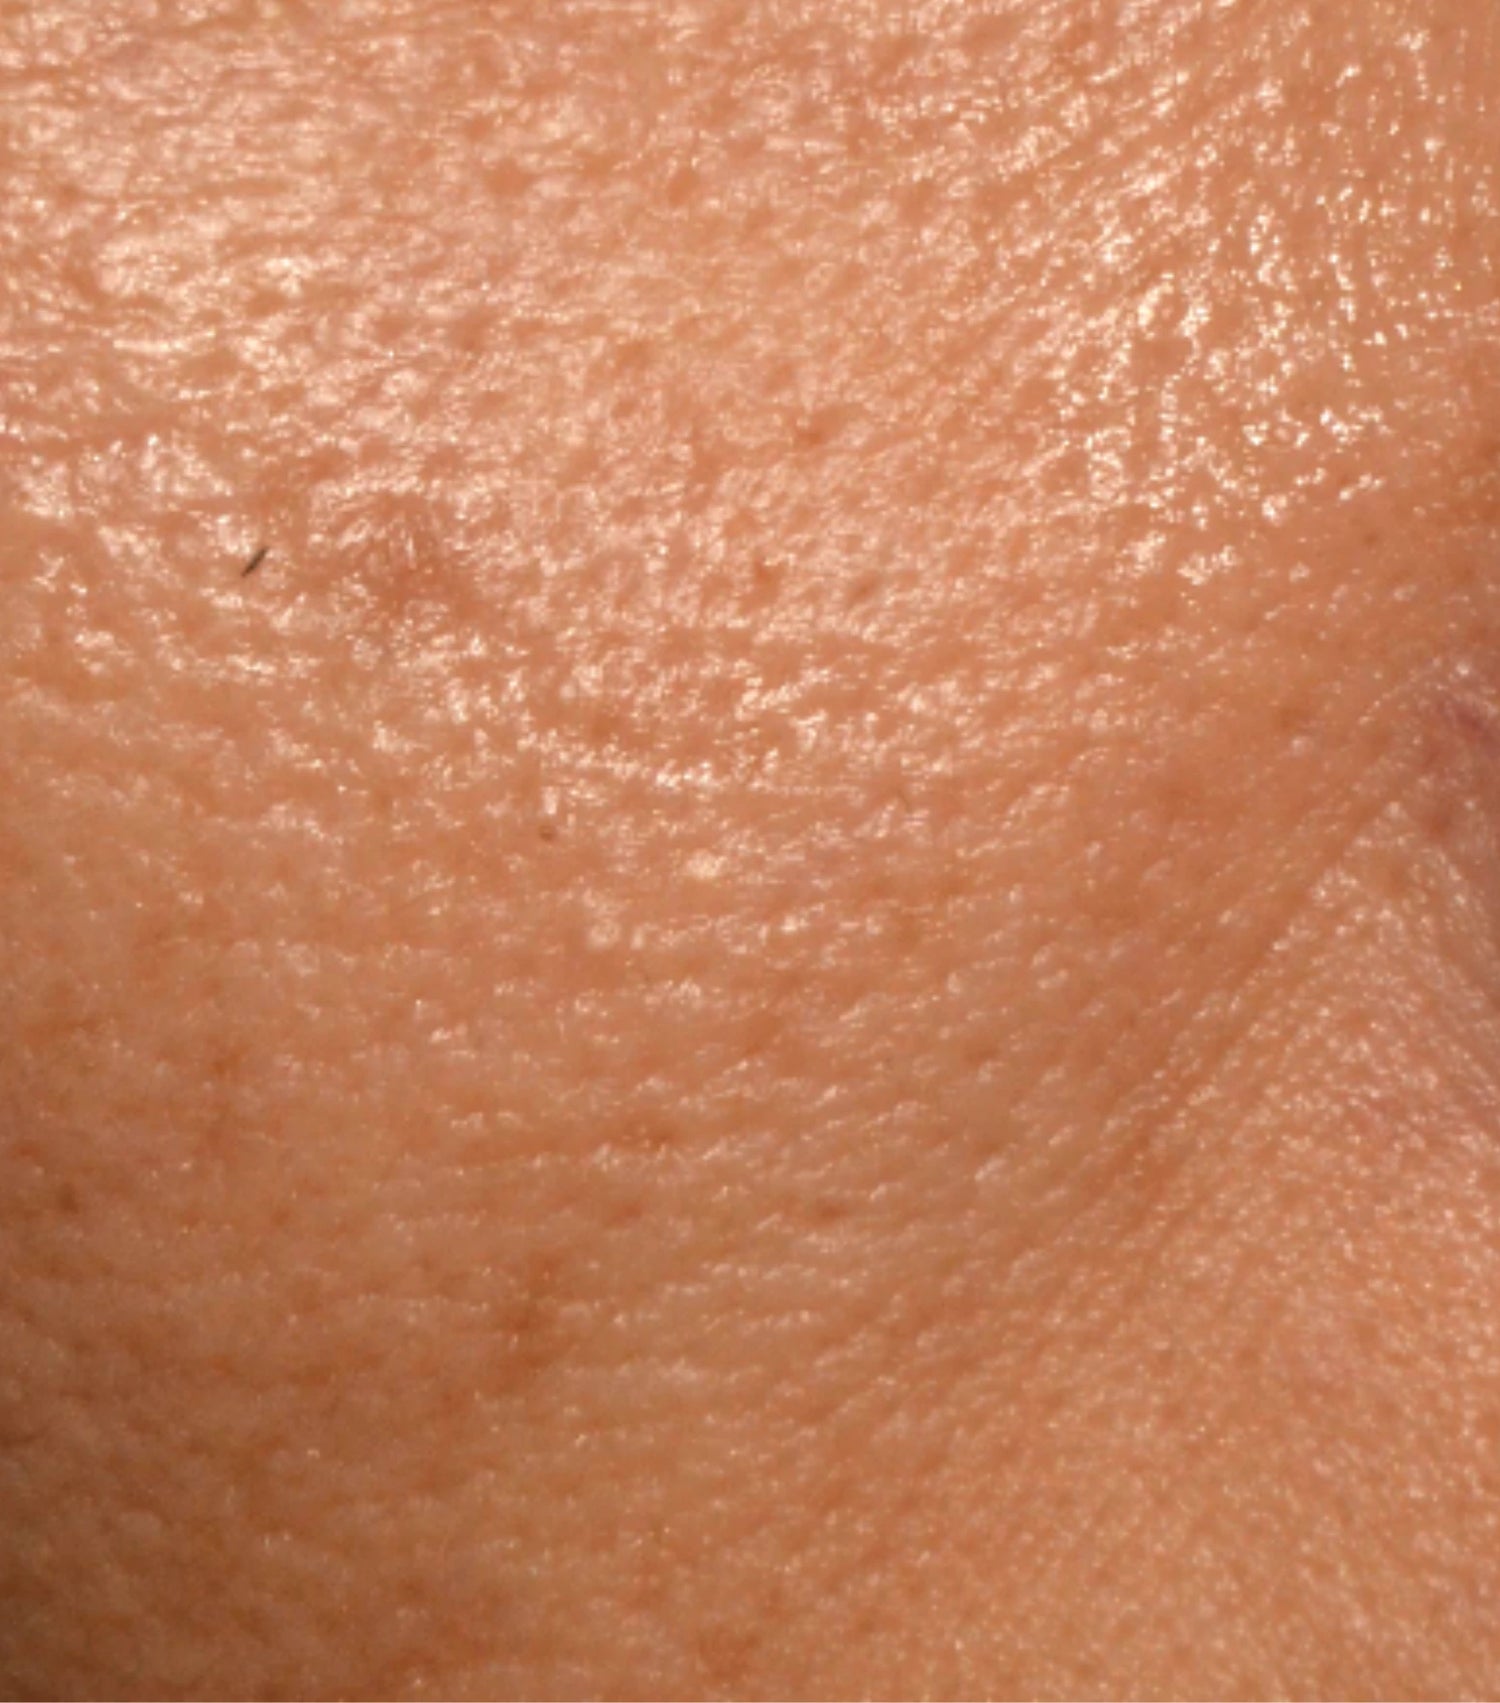 Image comparisons diamètre des pores (avant)